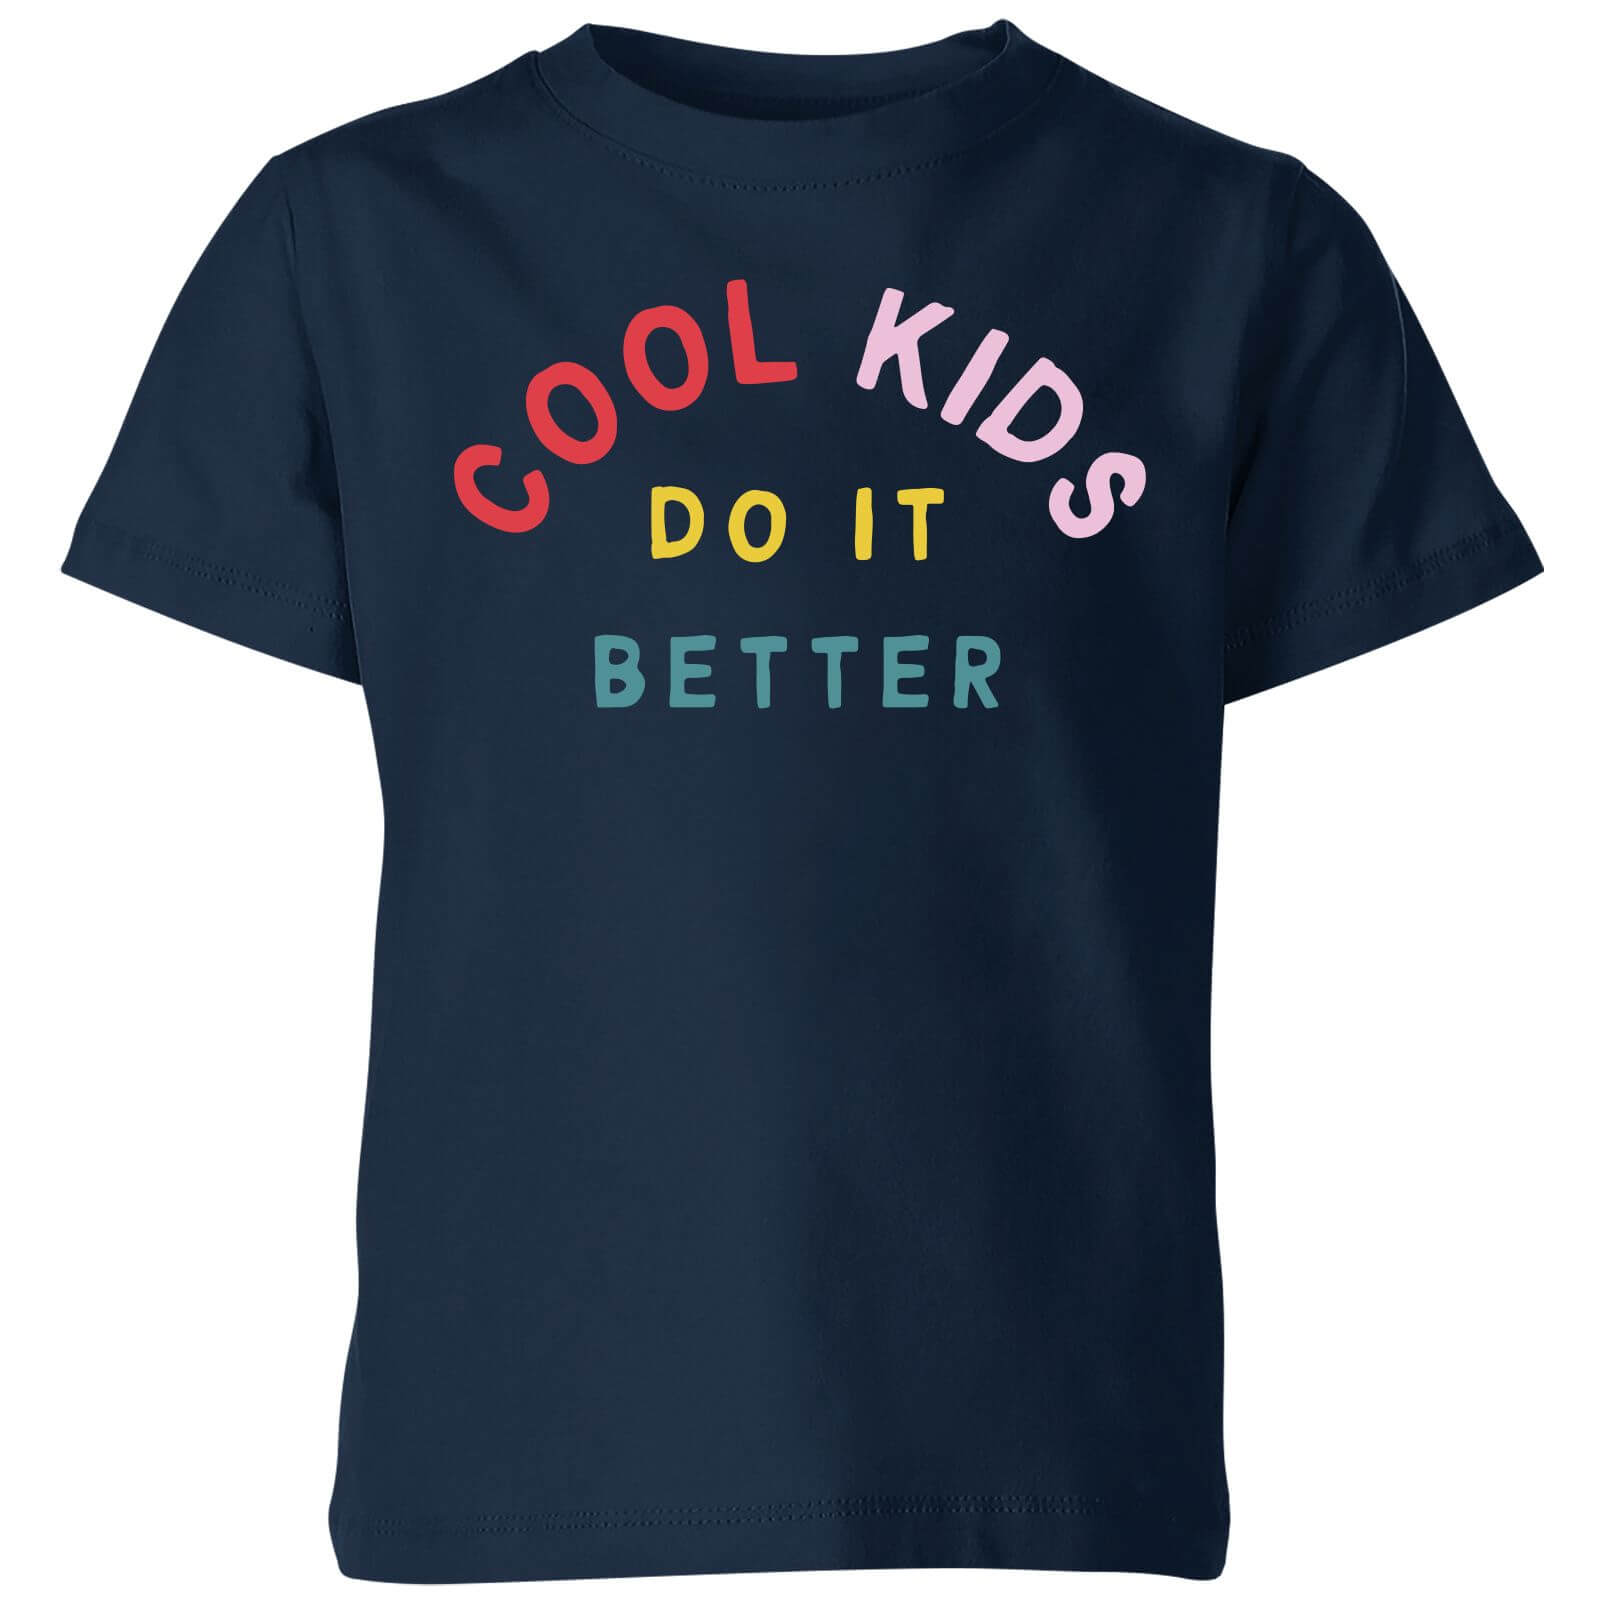 My Little Rascal Cool Kids Do It Better Kids' T-Shirt - Navy - 3-4 Years - Navy